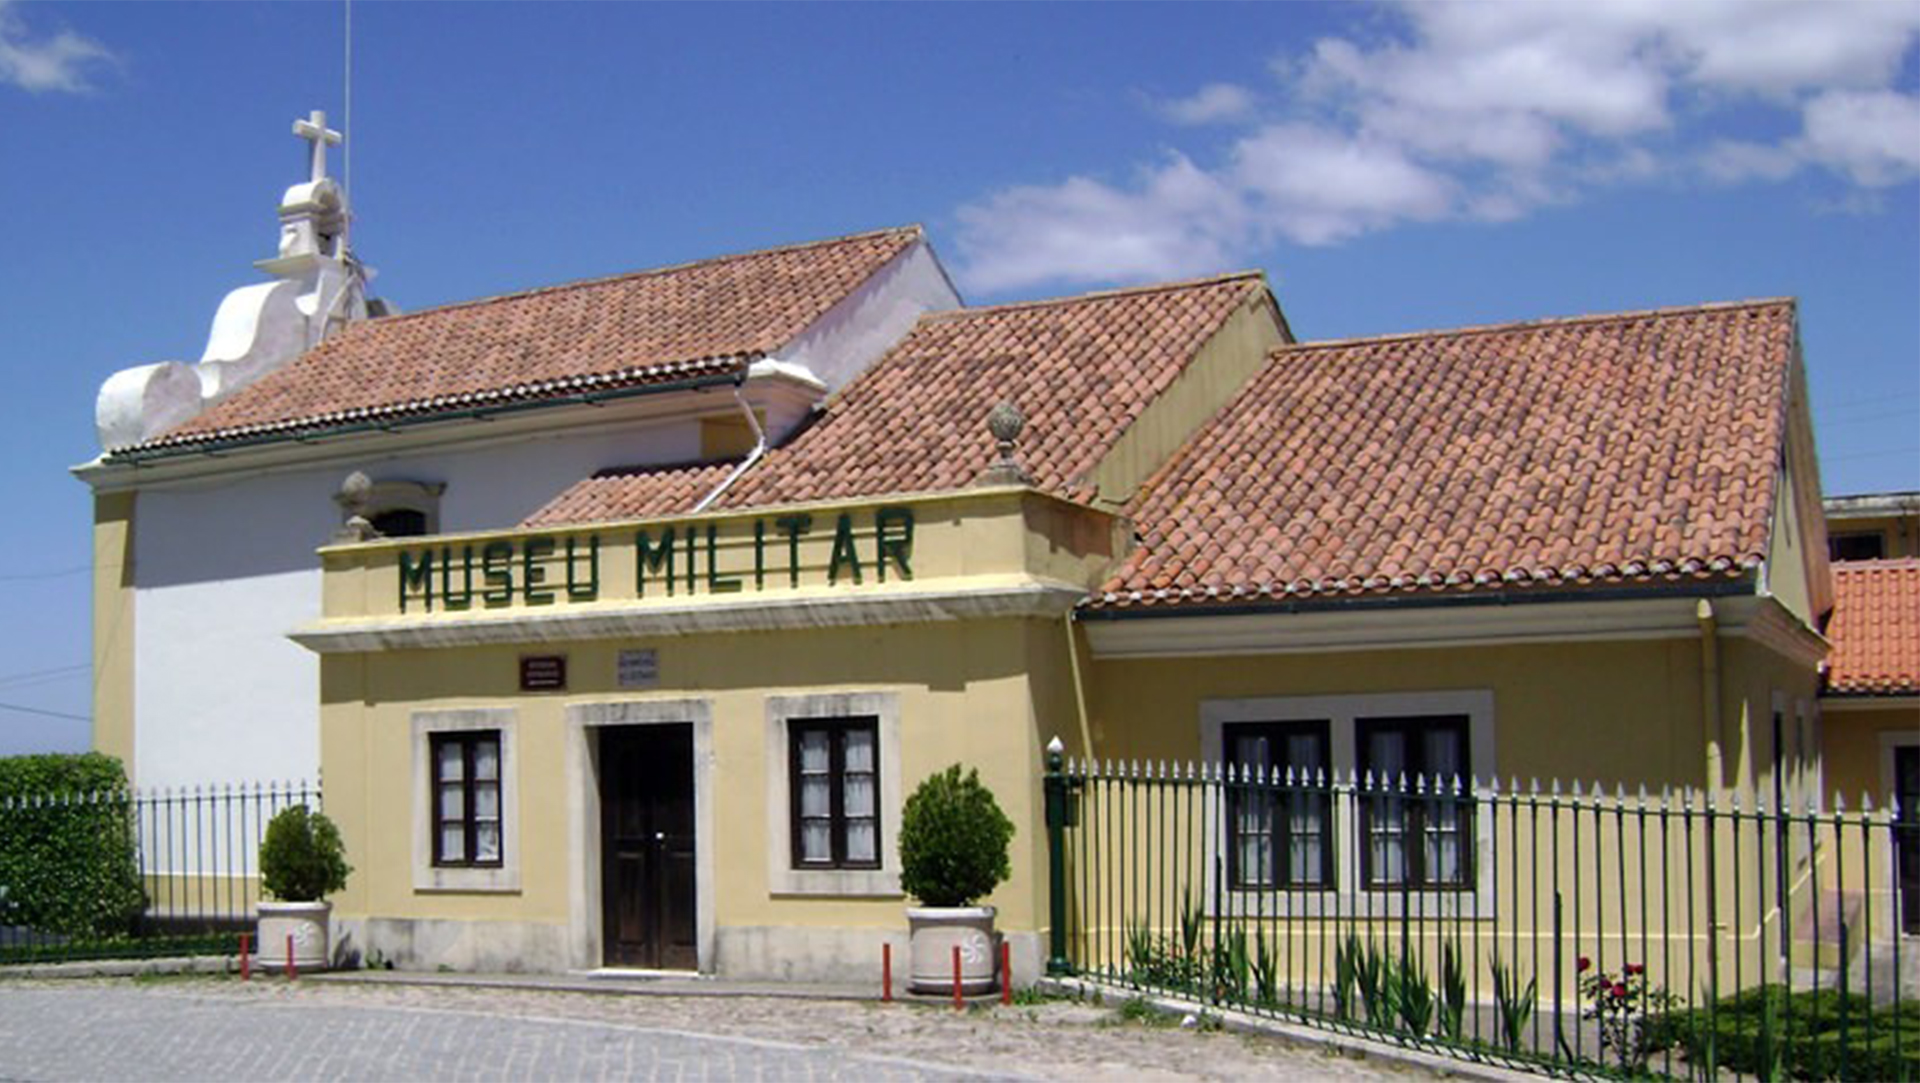 Museu Militar do Buaco Mealhada